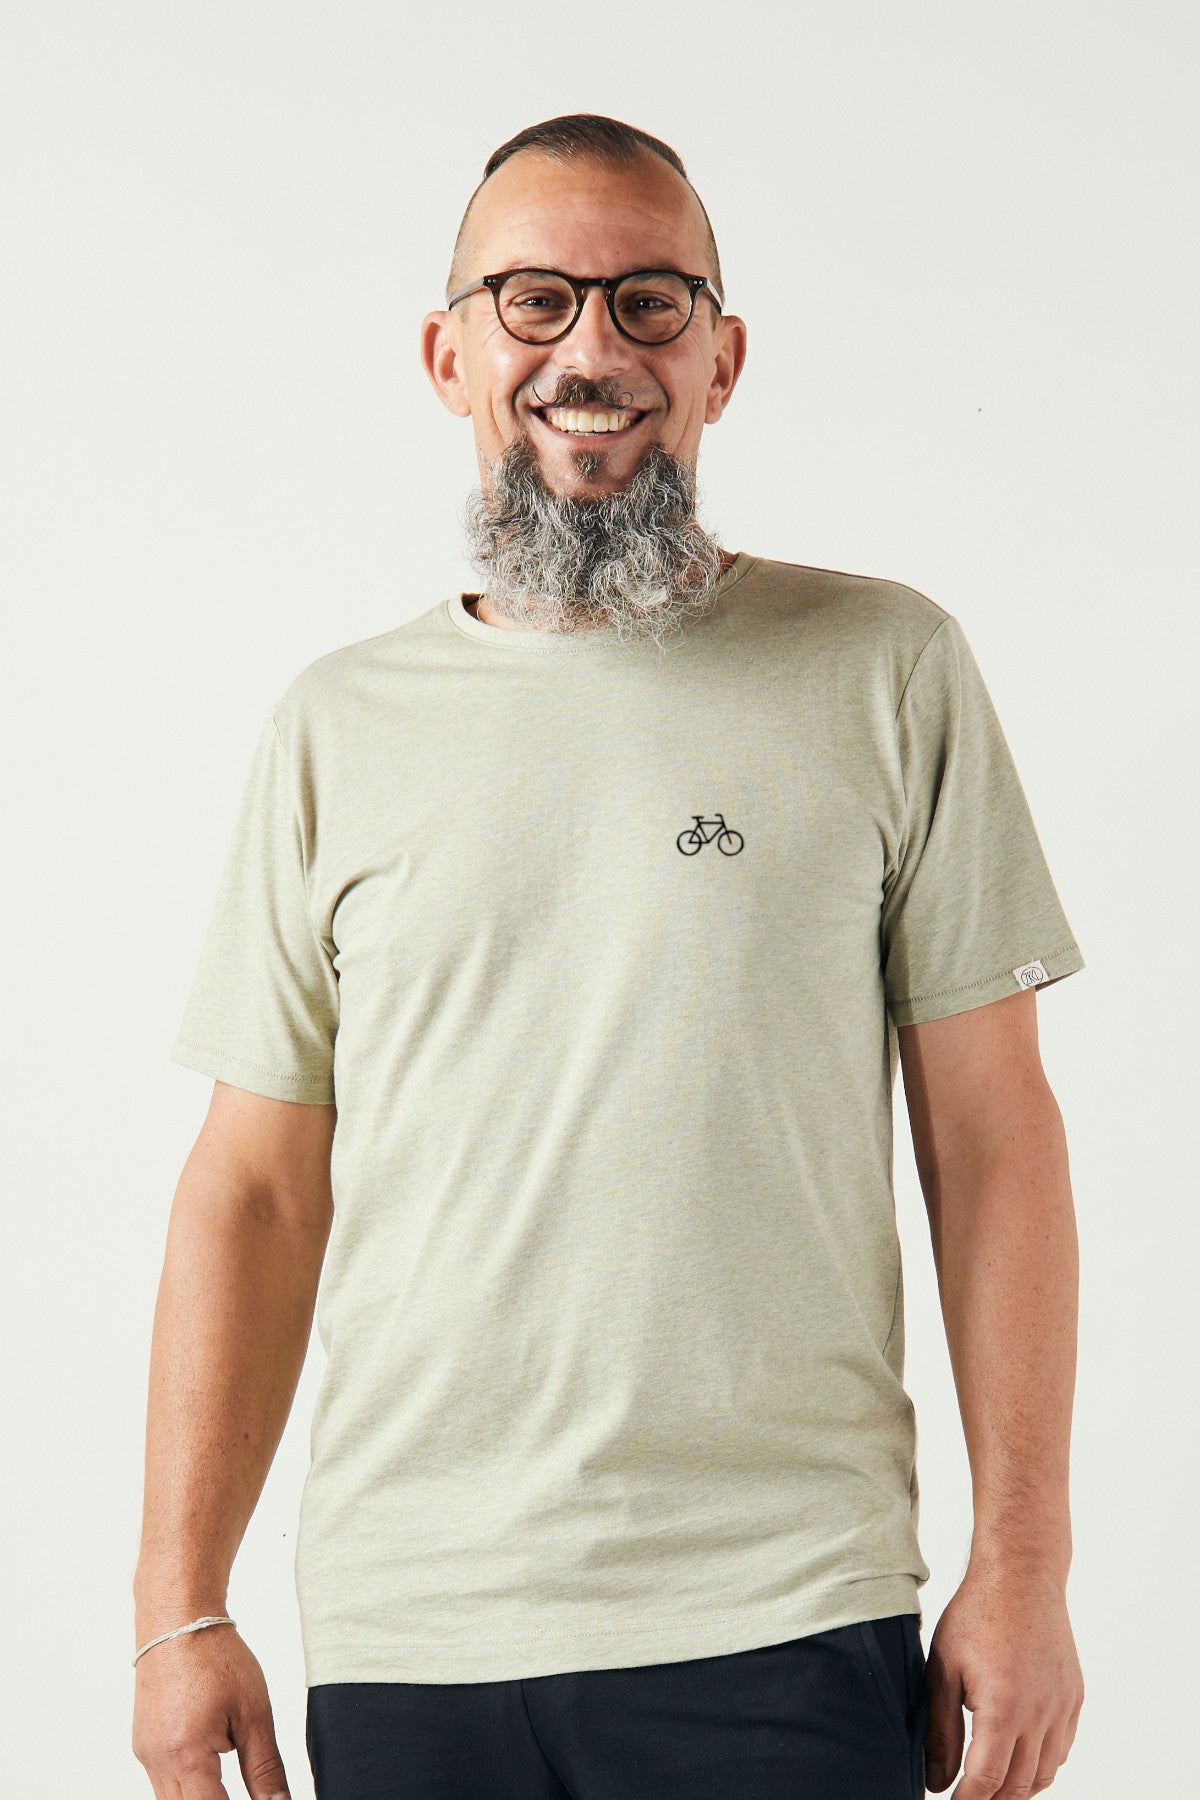 ZRCL Herren-T-Shirt mit Velo-Sujet aus Biobaumwolle